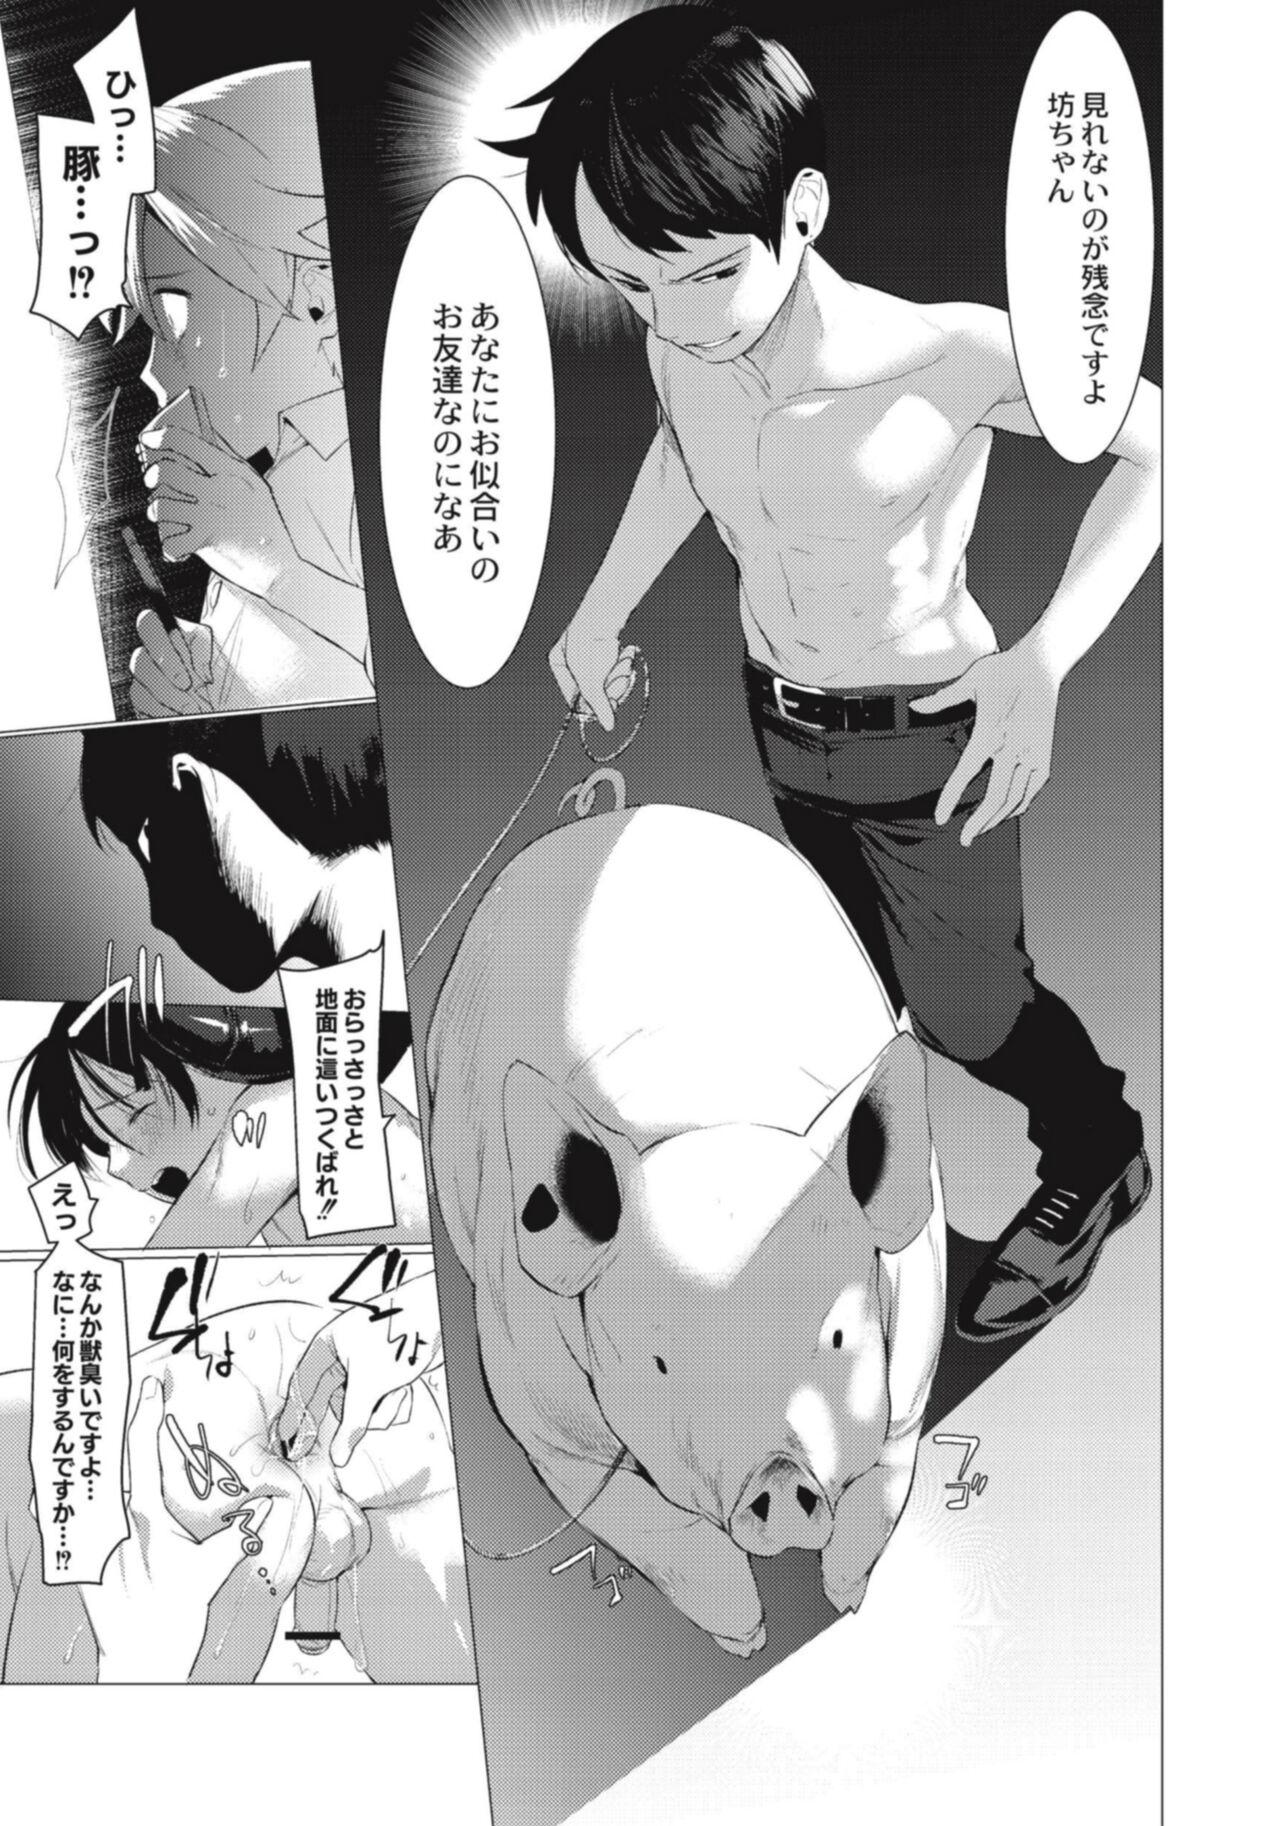 Hentai Shounen Kyoukasho - HENTAI BOYS SCHOOLBOOK 167